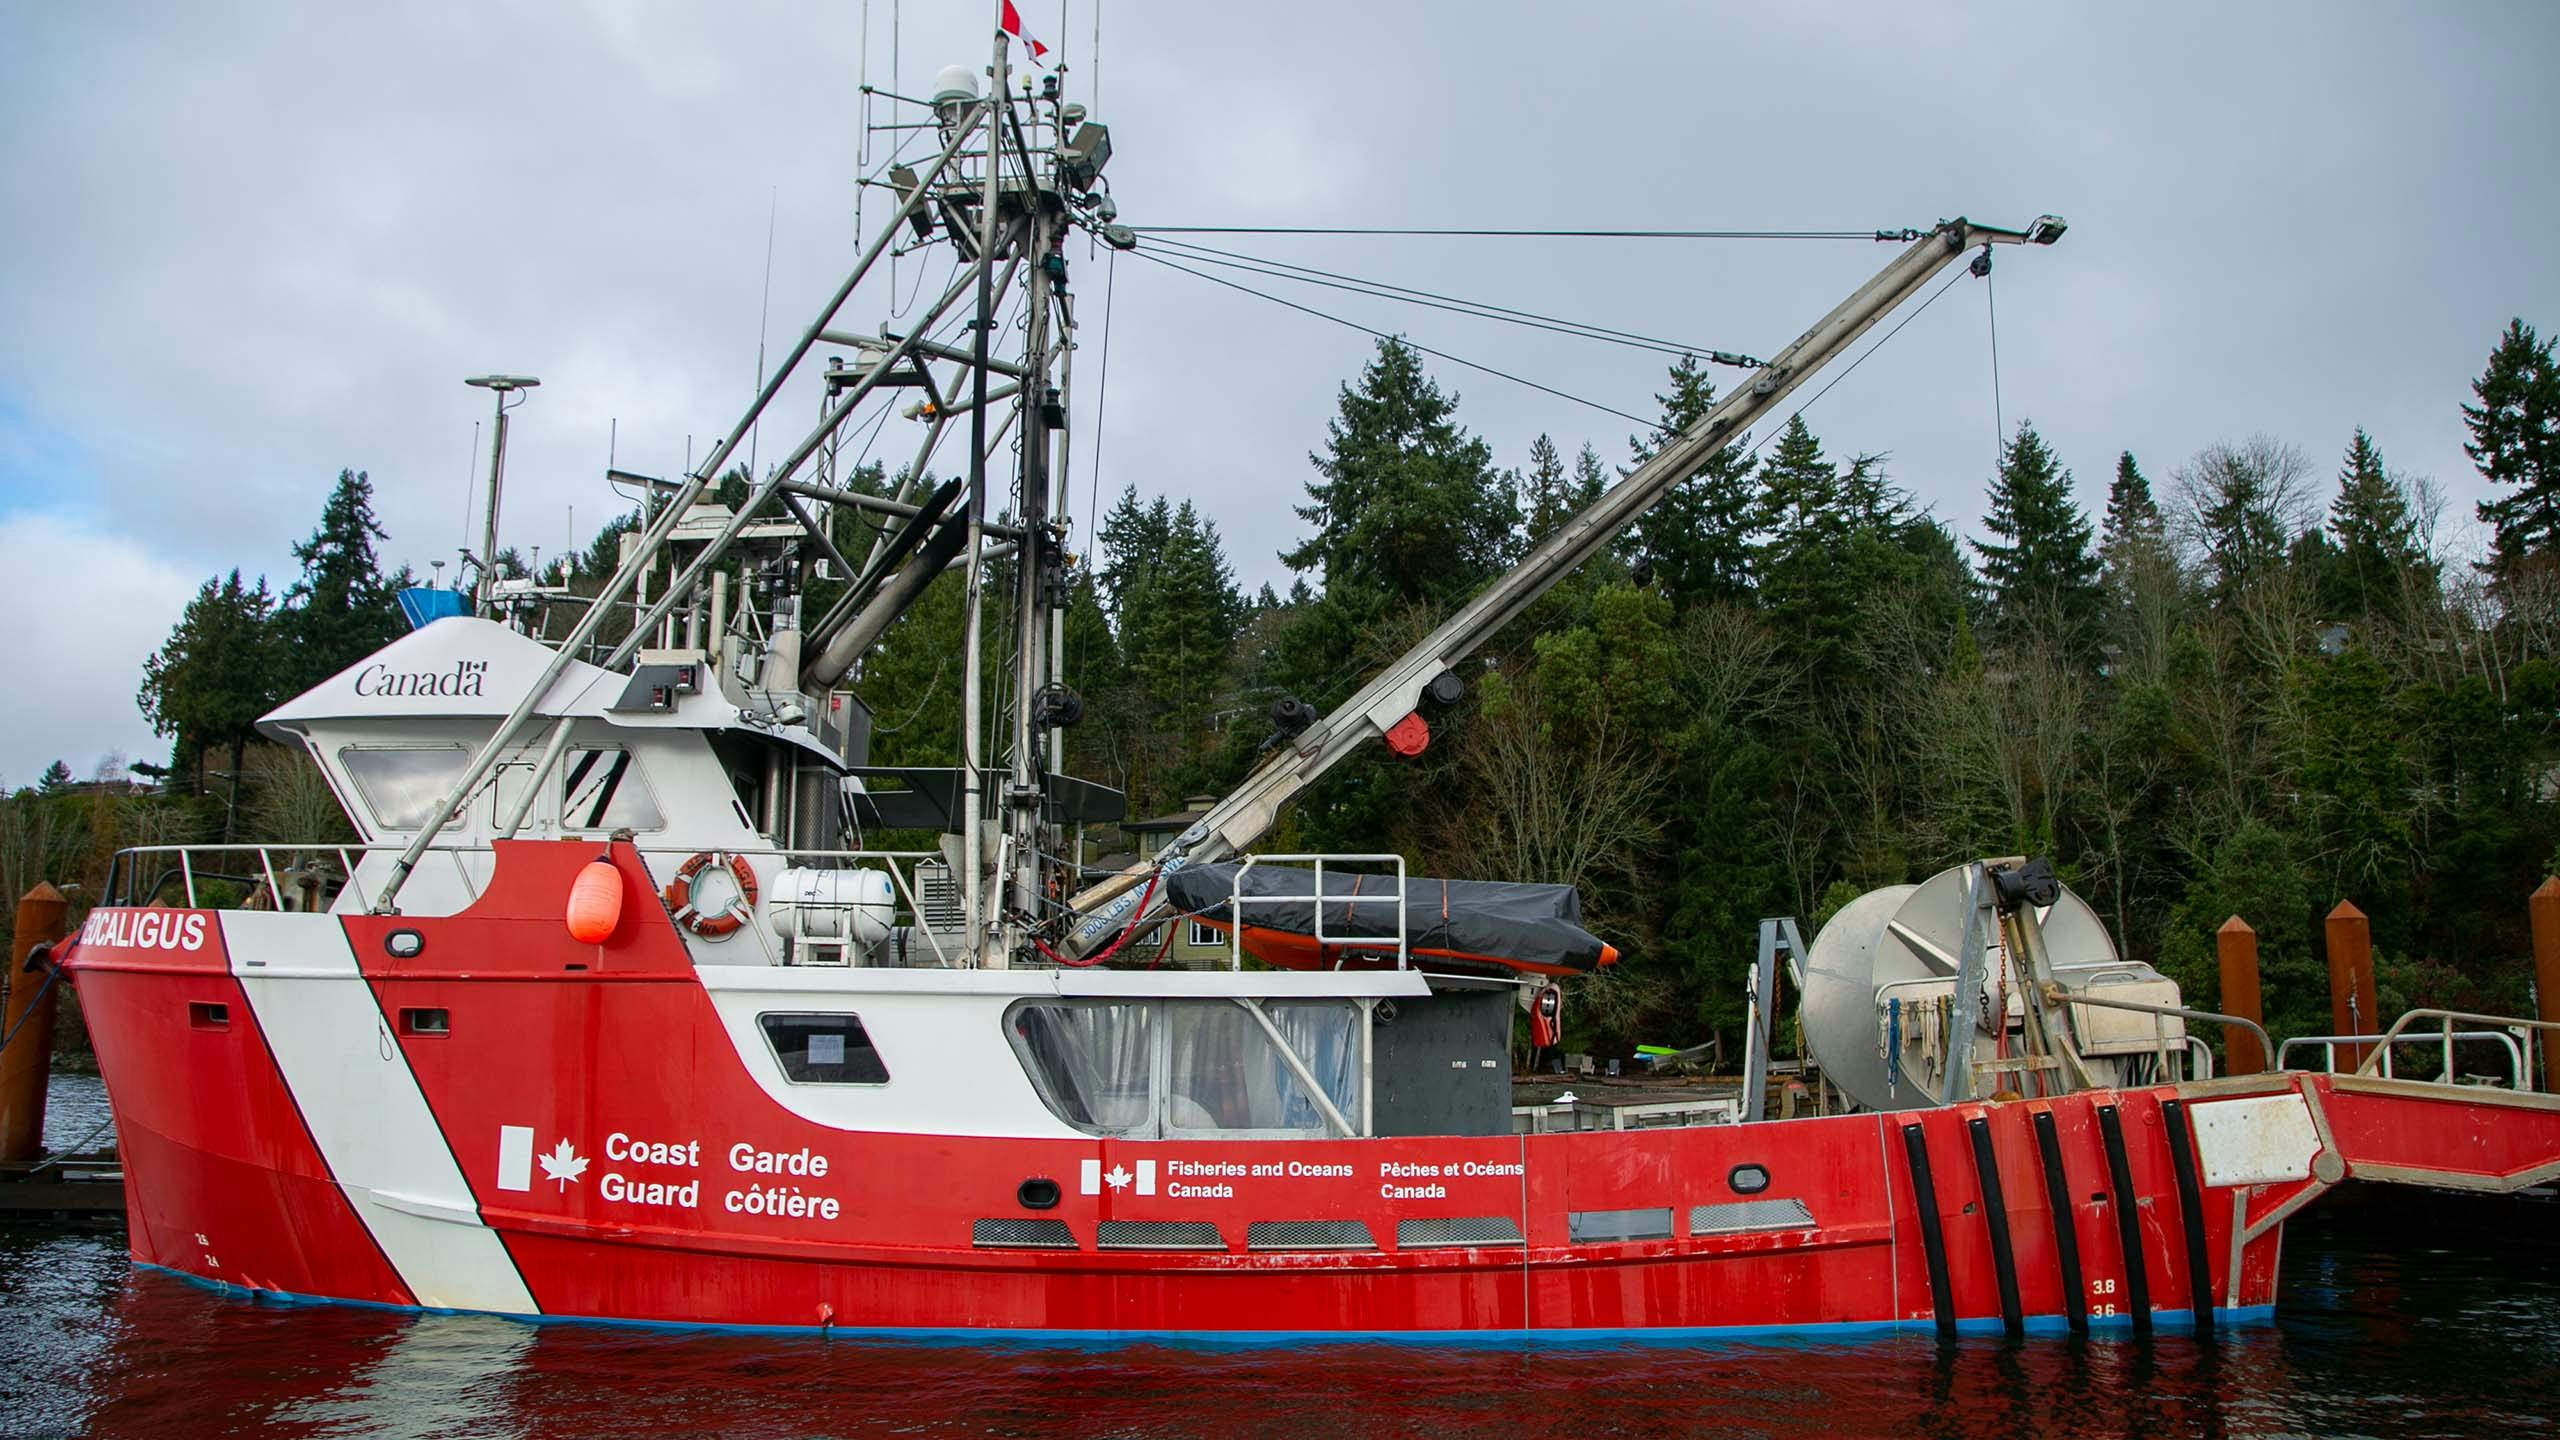 Canada coast guard image of boat